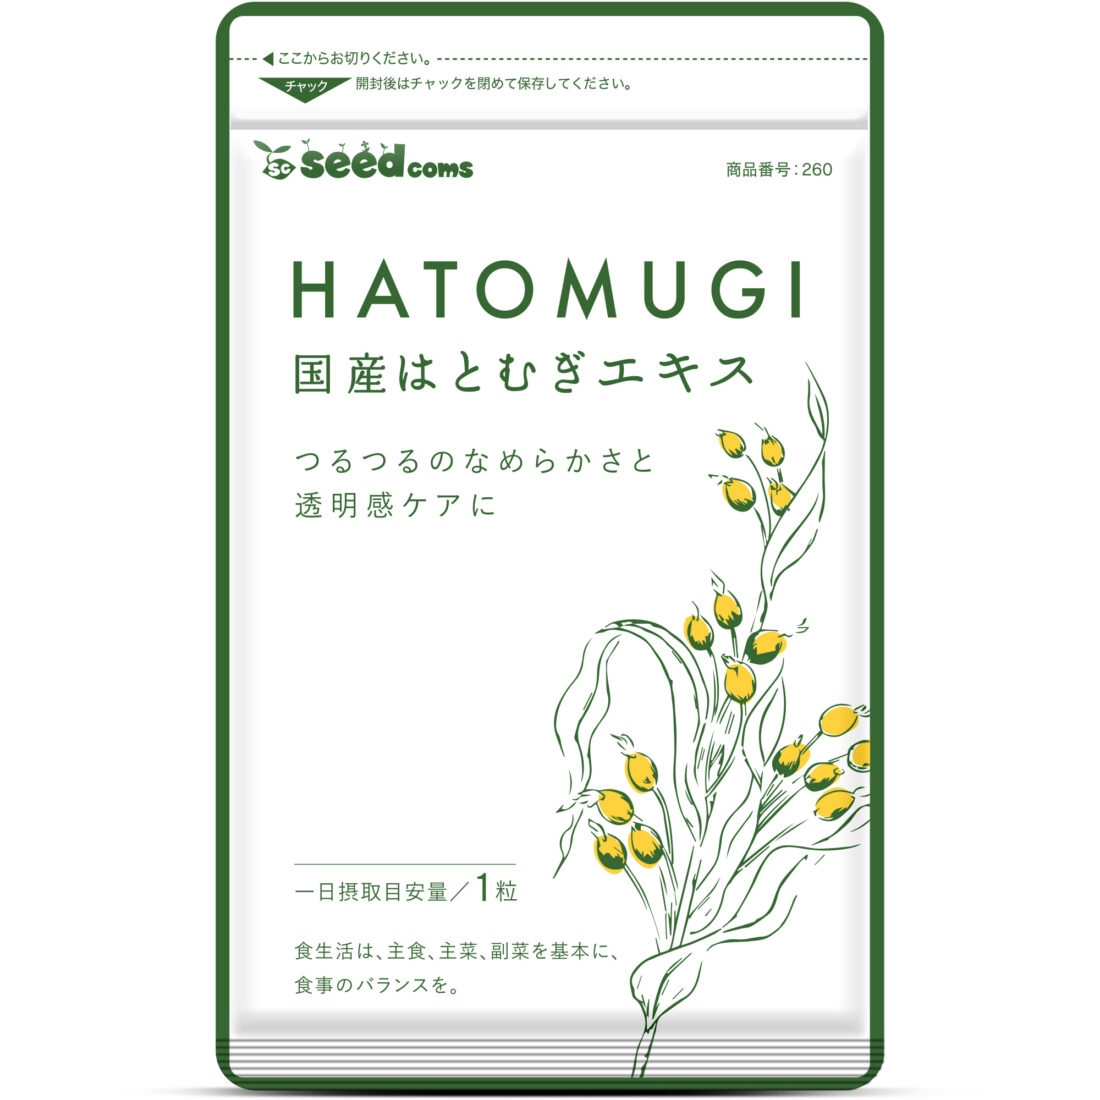 Hạt giống Hatomugi com hạt giống